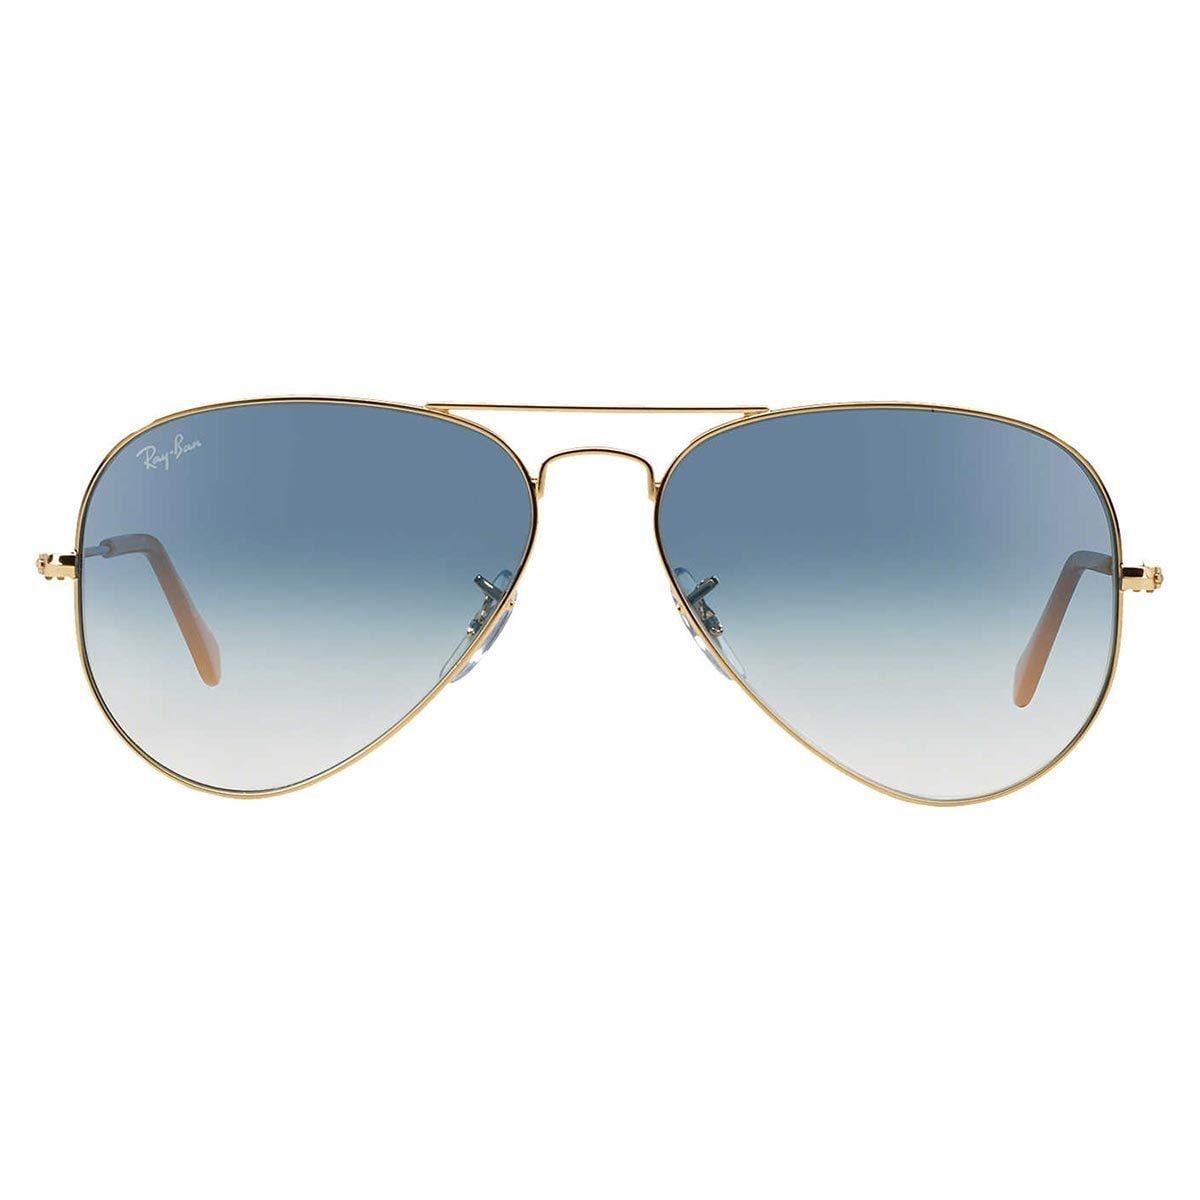 Ray Ban Aviator Rb 3025 Unisex Gold Frame Light Blue Gradient Lens Sunglasses Overstock